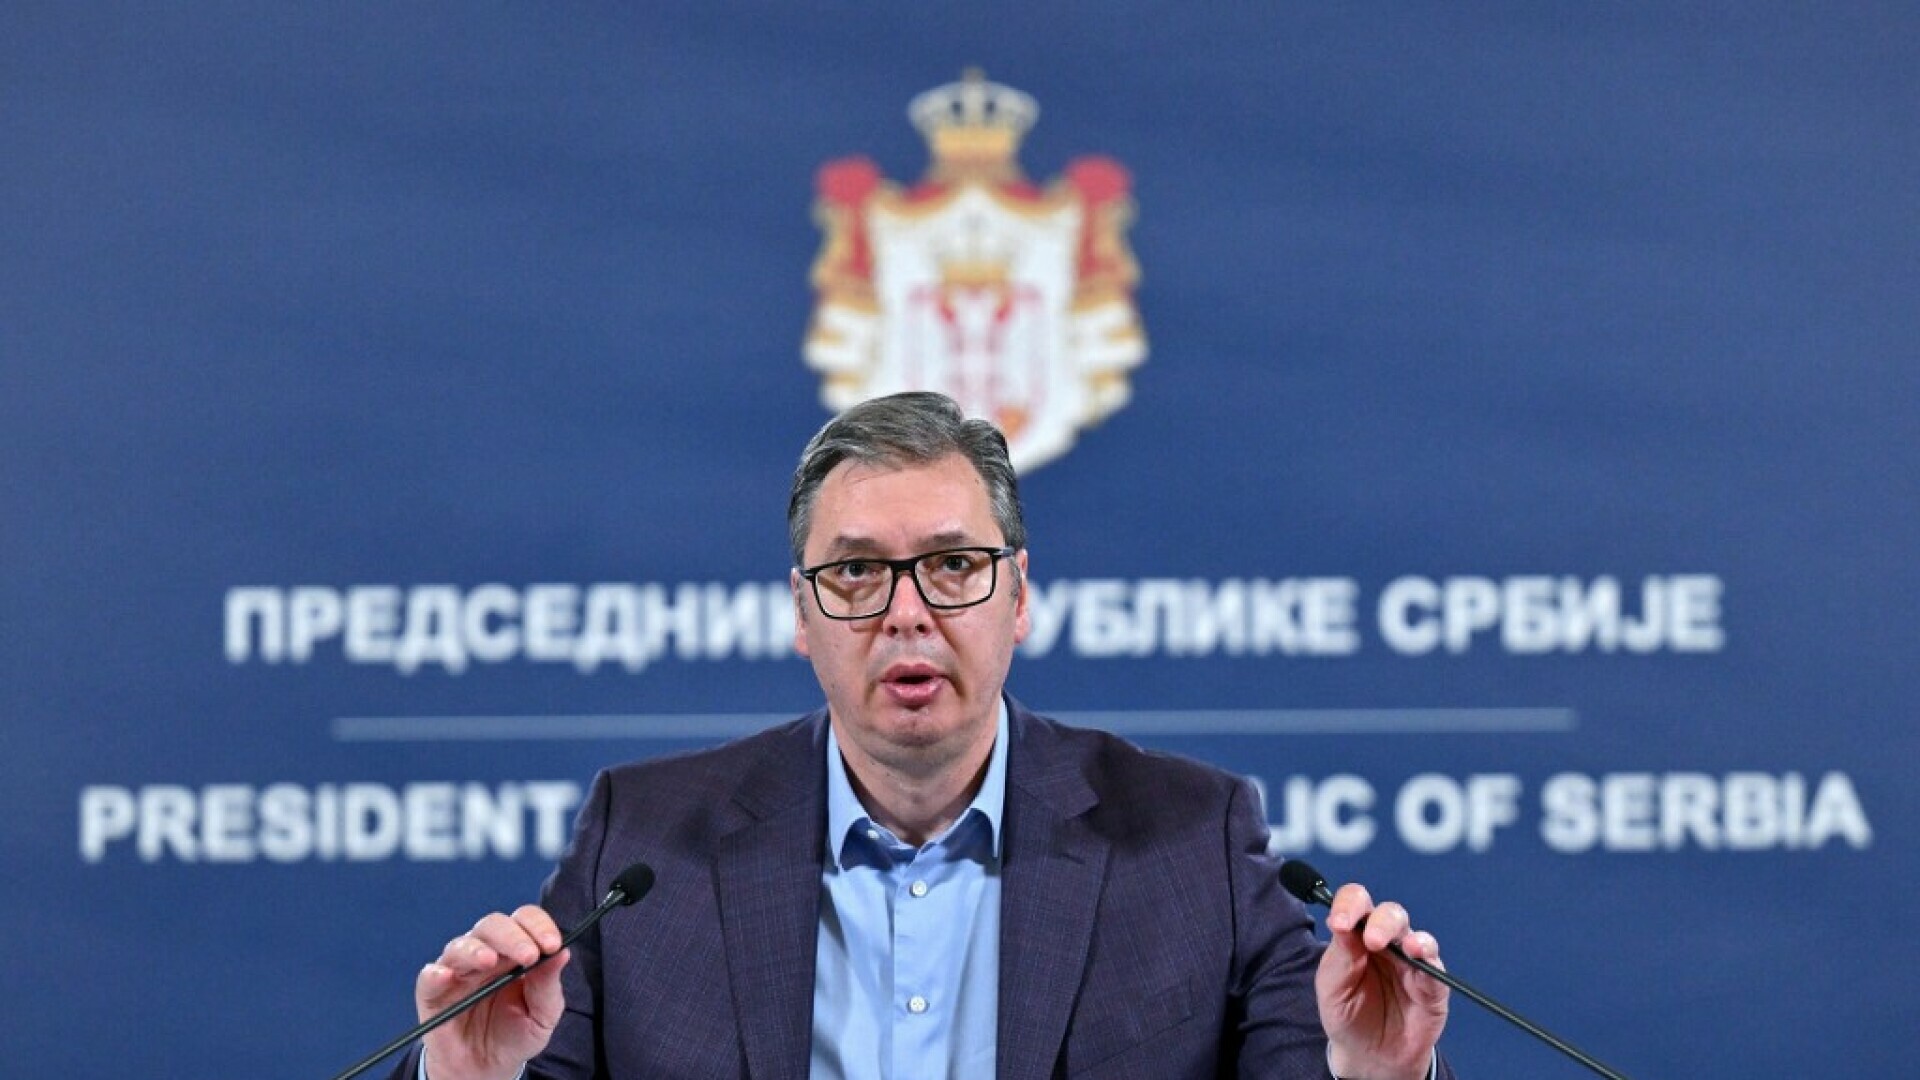 Oglasio se Vučić, optužio Kurtija da je isprovocirao incidente na Kosovu: “Ubijena su trojica Srba”